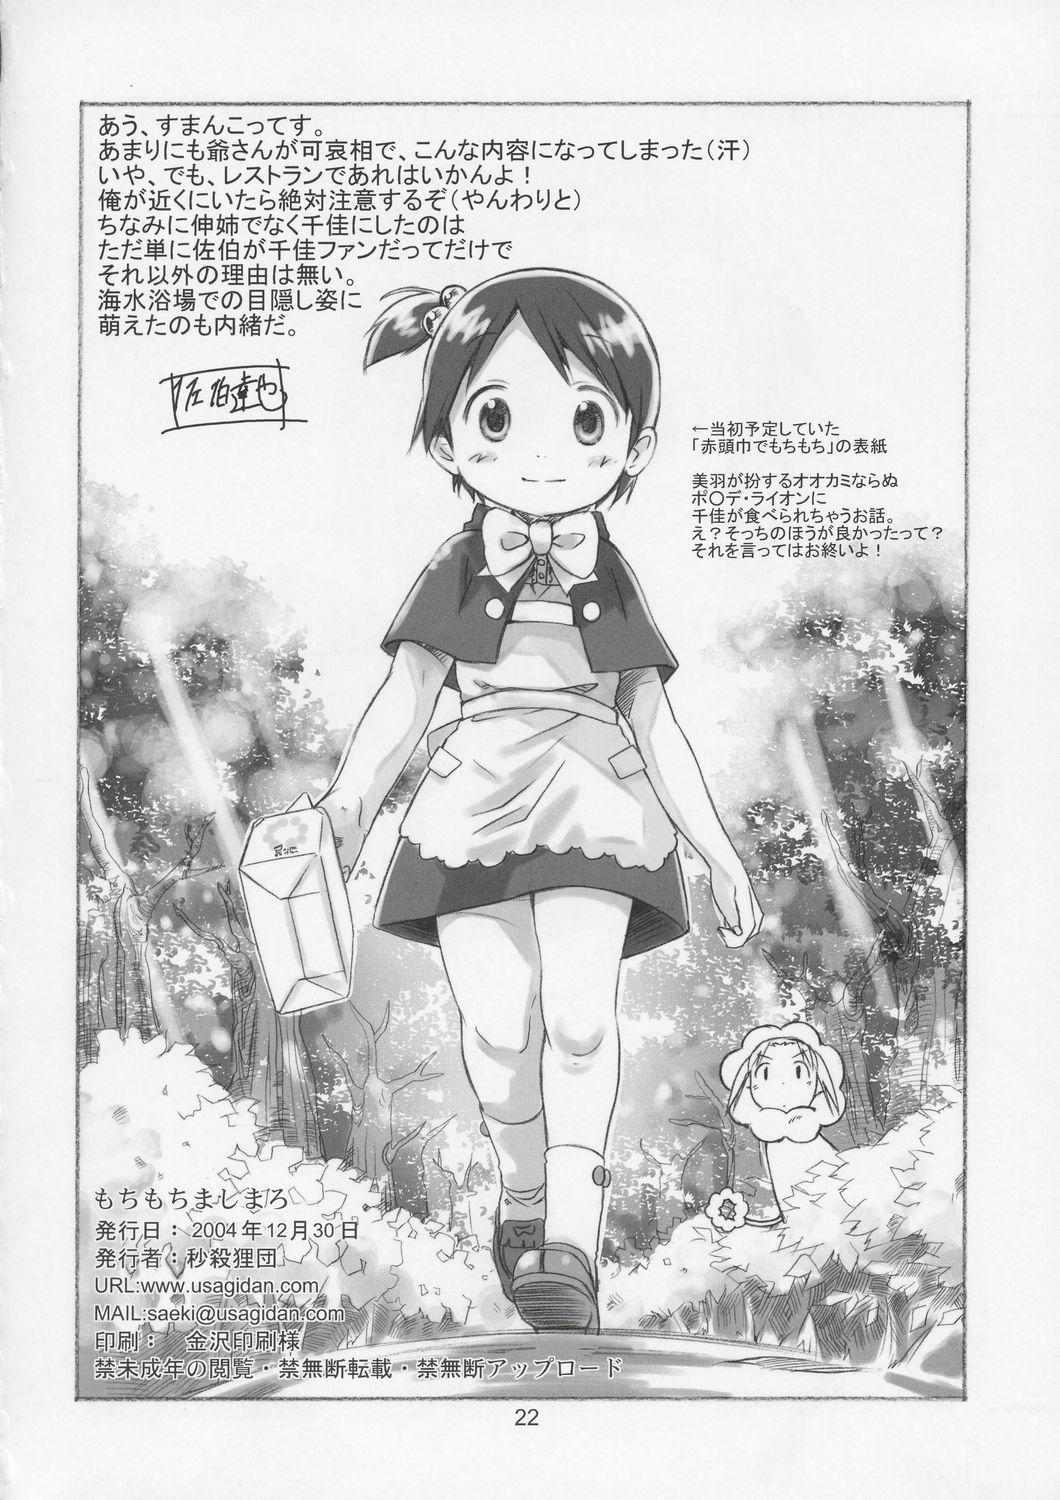 Assfuck Mochi Mochi Mashimaro - Ichigo mashimaro Adorable - Page 21